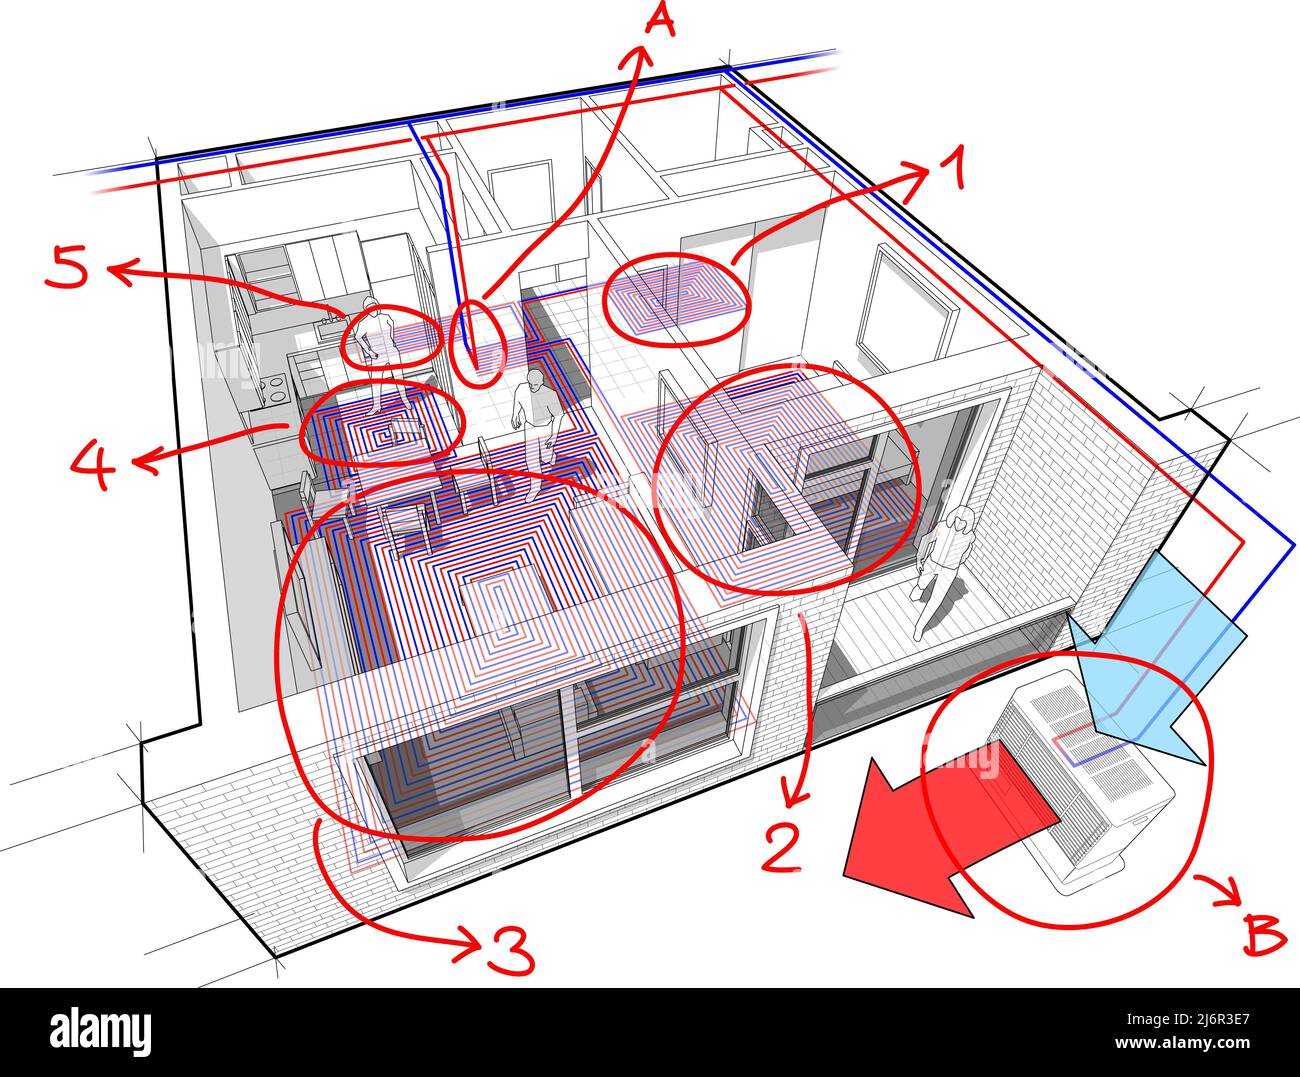 Wohnung komplett mit Warmwasser-Fußbodenheizung und Luftquelle Wärmepumpe mit Zentralheizung ausgestattet Stockfoto